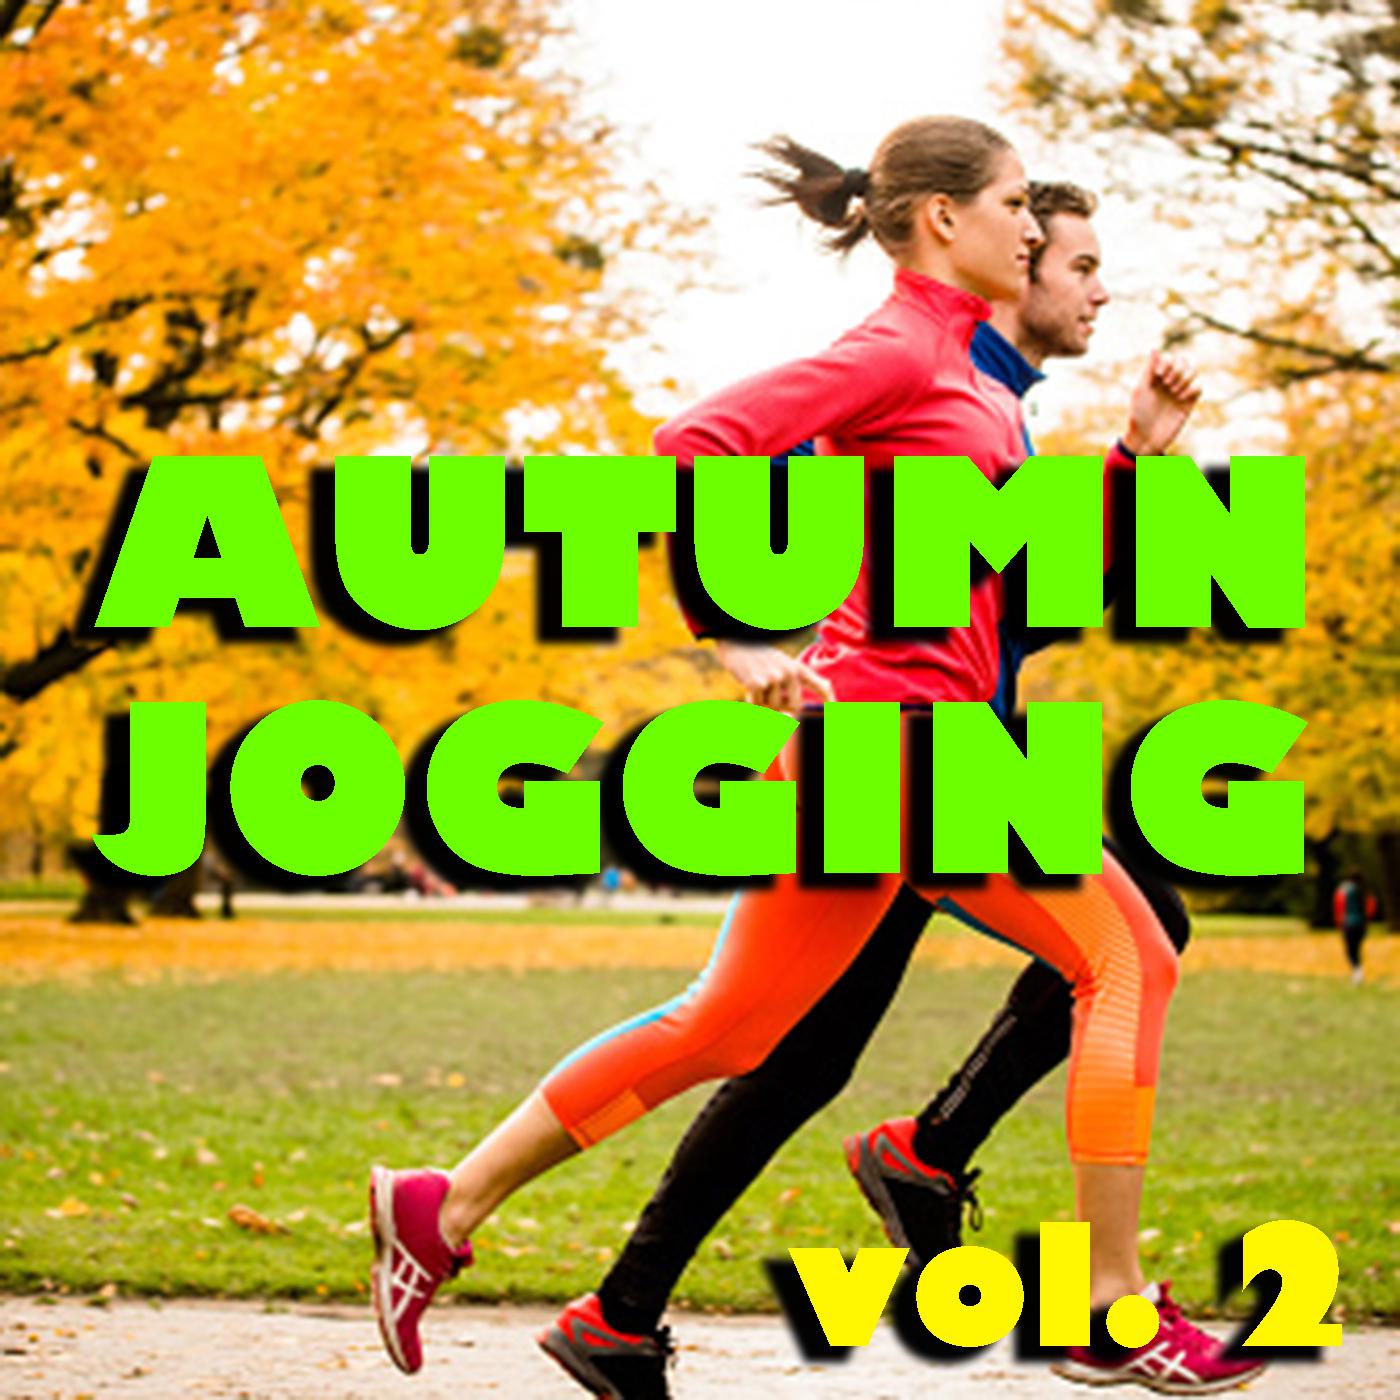 Autumn Jogging vol. 2